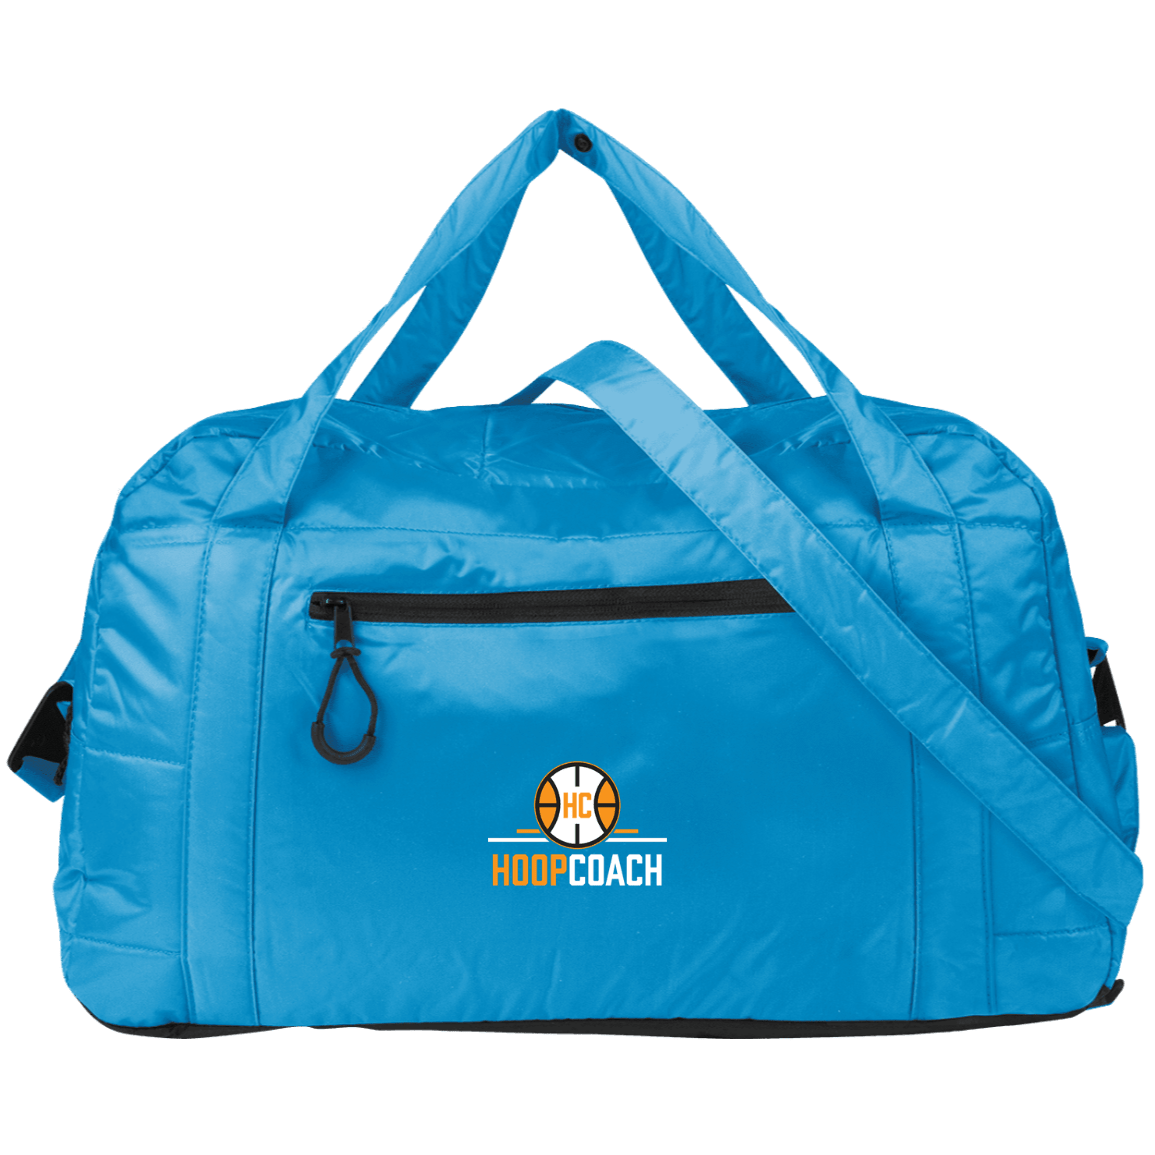 Hoop Coach Travel Bag - Hoop Coach